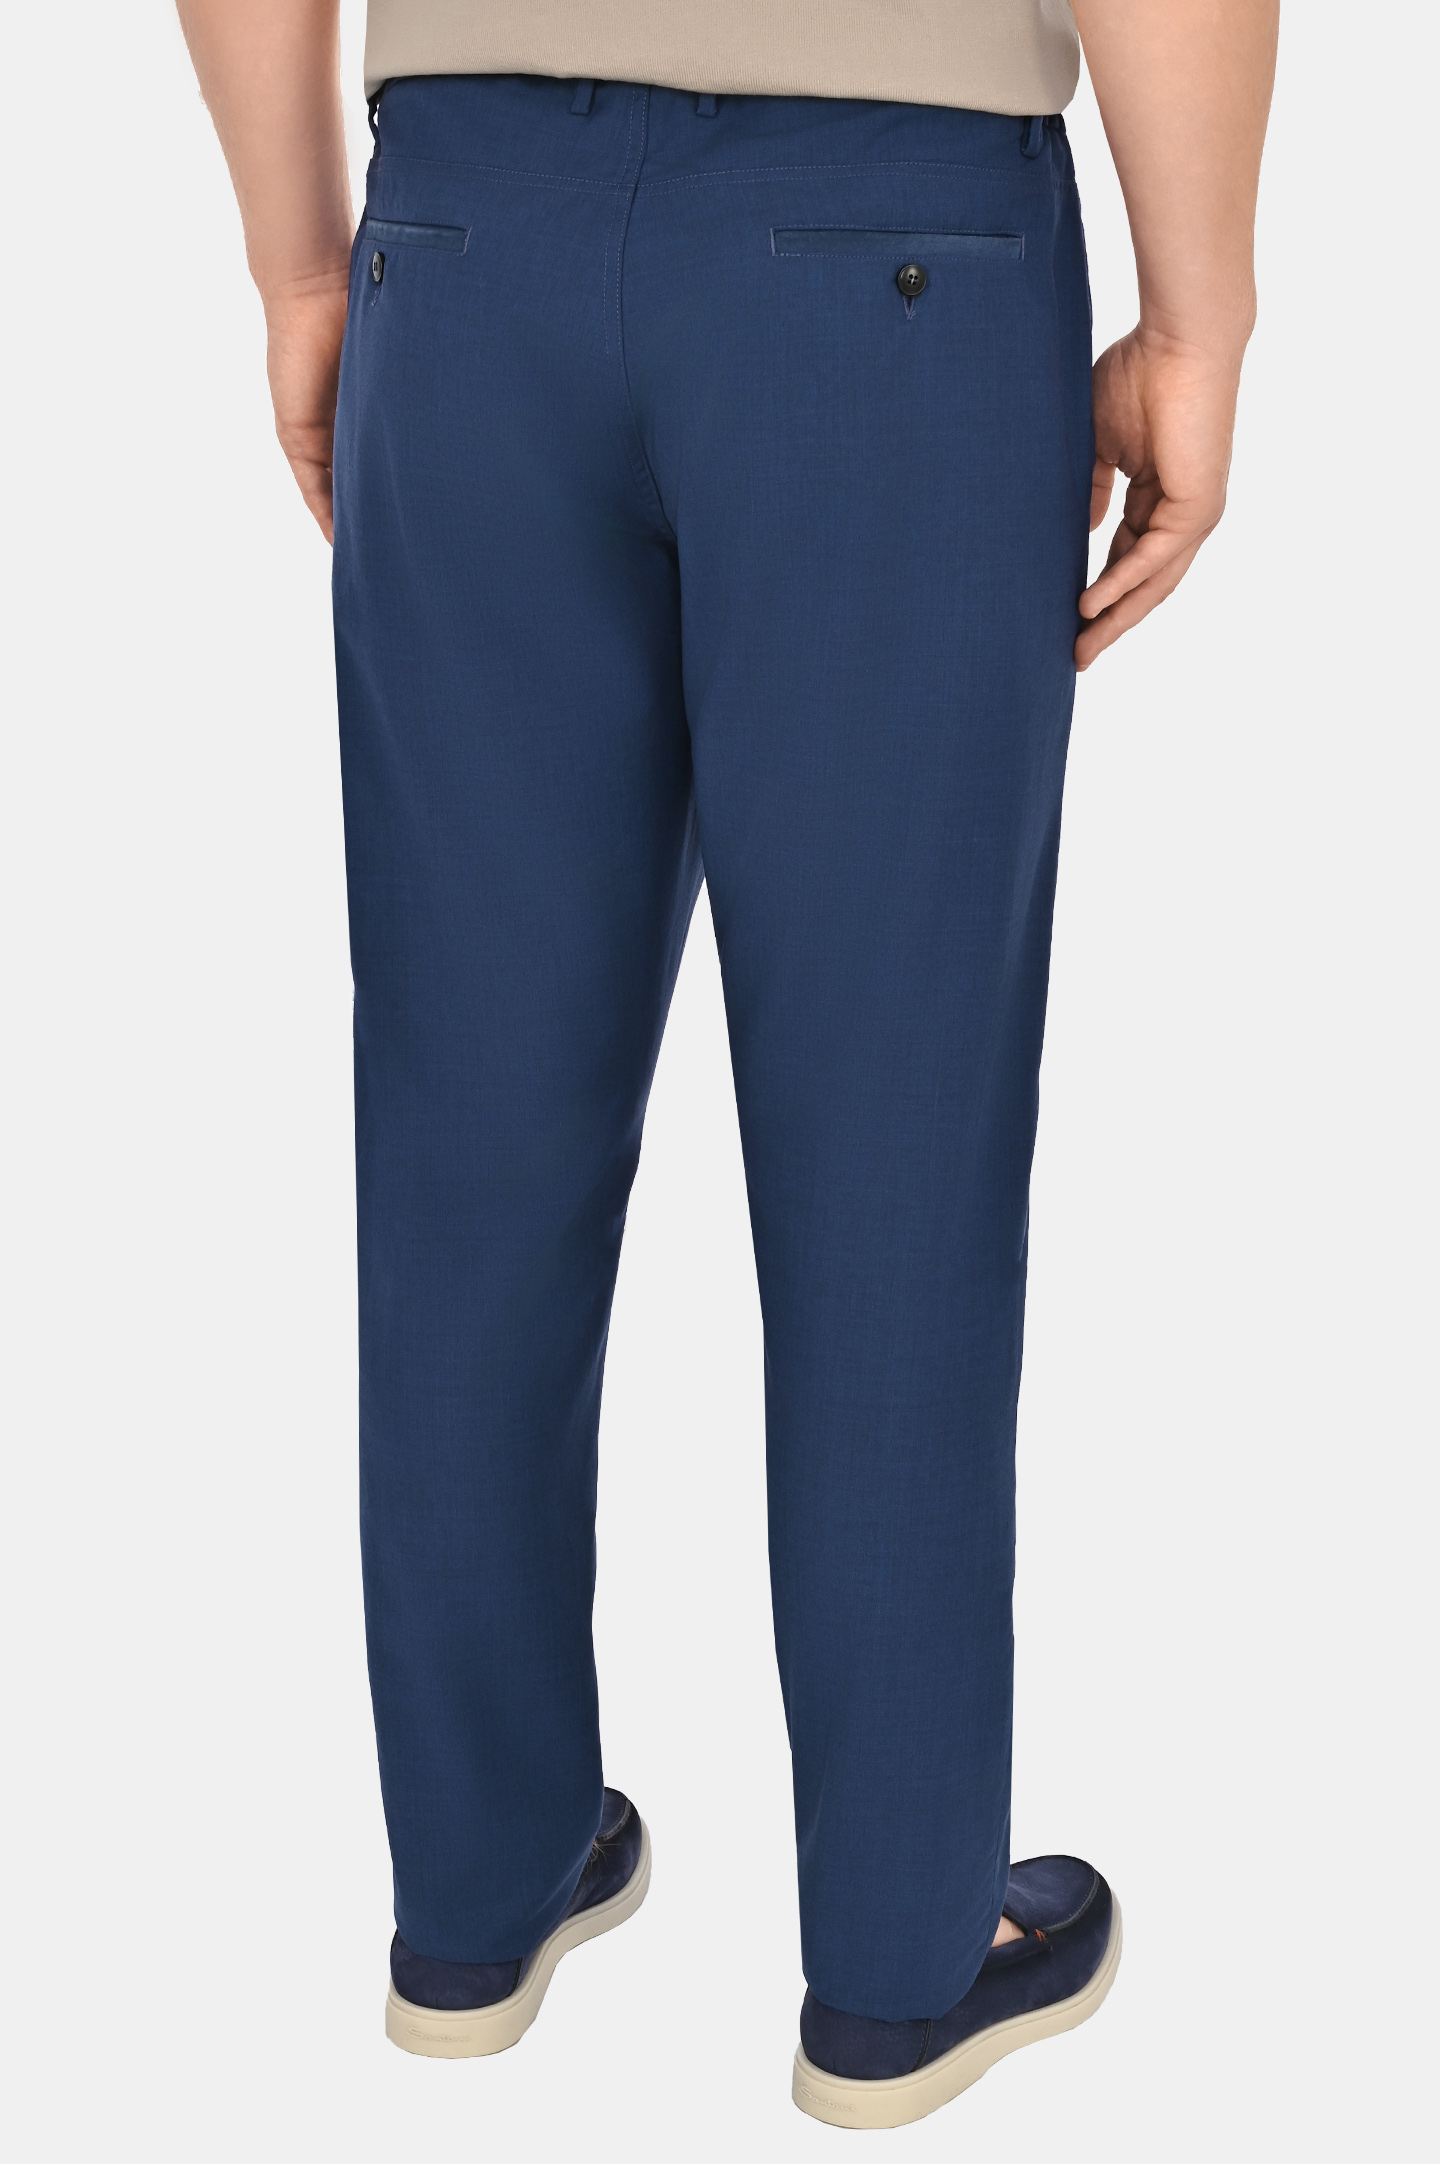 Классические шерстяные брюки CANALI PR01197 91678/1, цвет: Синий, Мужской